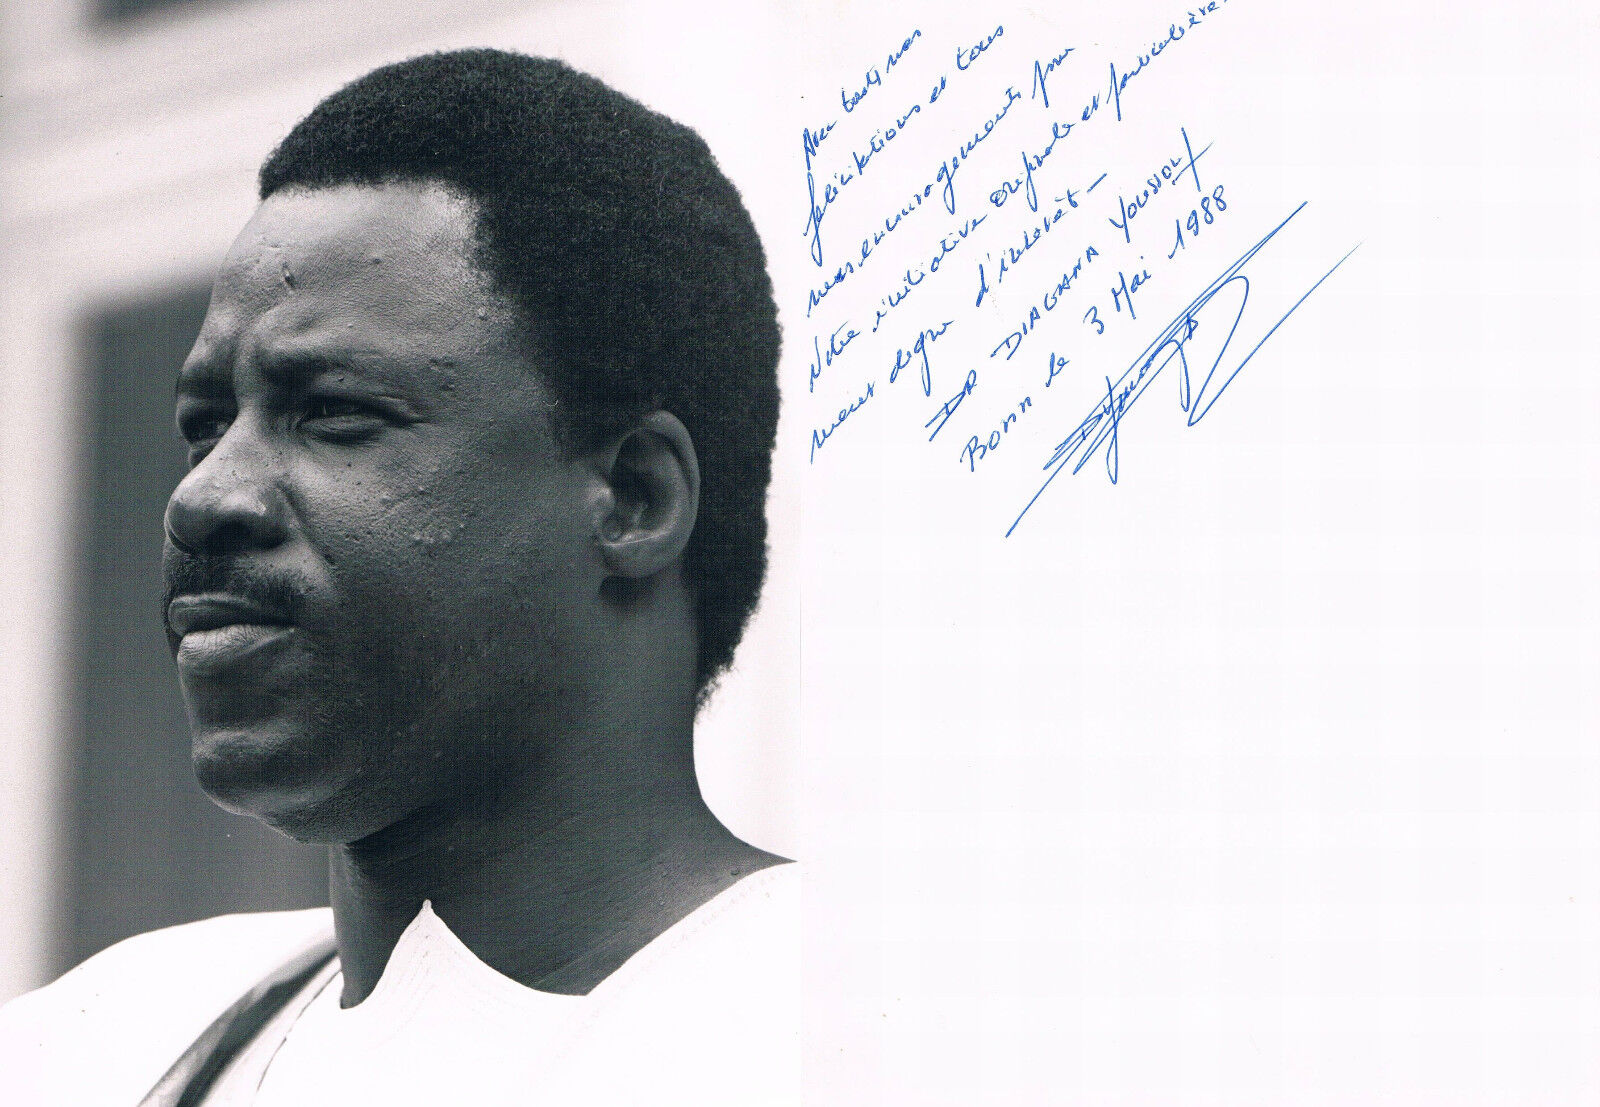 Mauretania diplomat Diagana Youssouf autograph verso signed 6x8